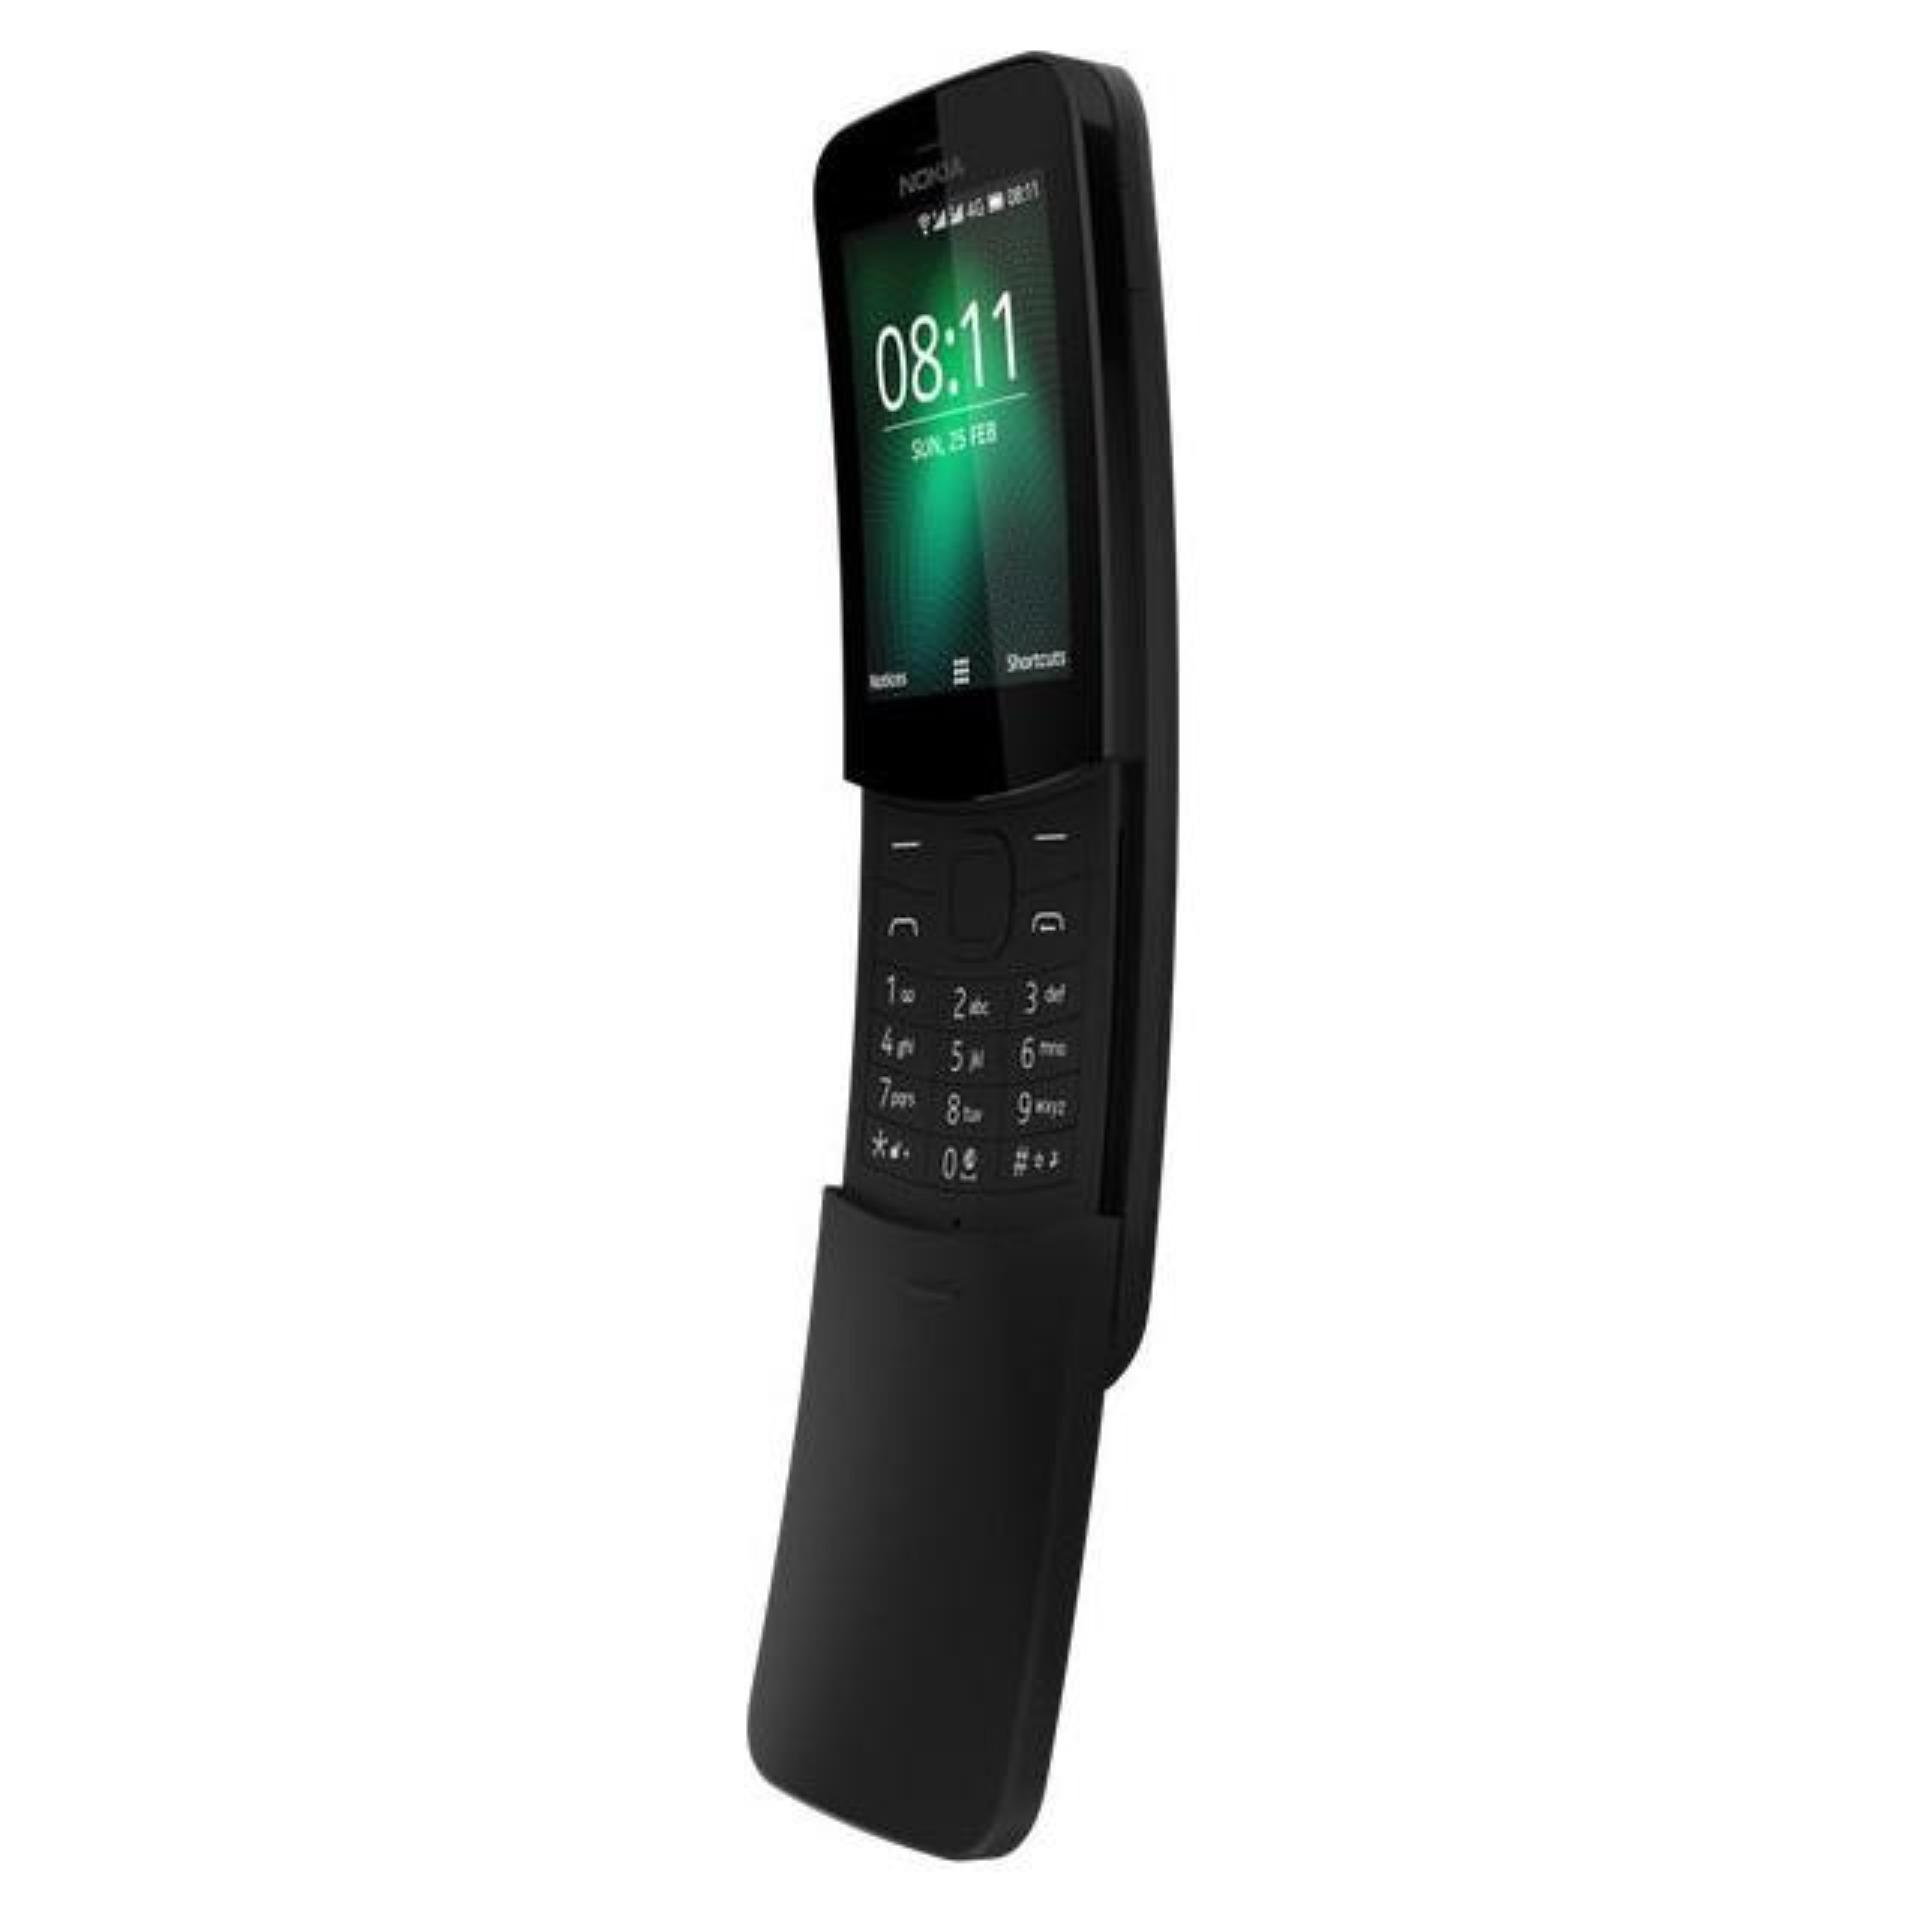 Điện thoại Nokia 8110 Black - FPT phân phối